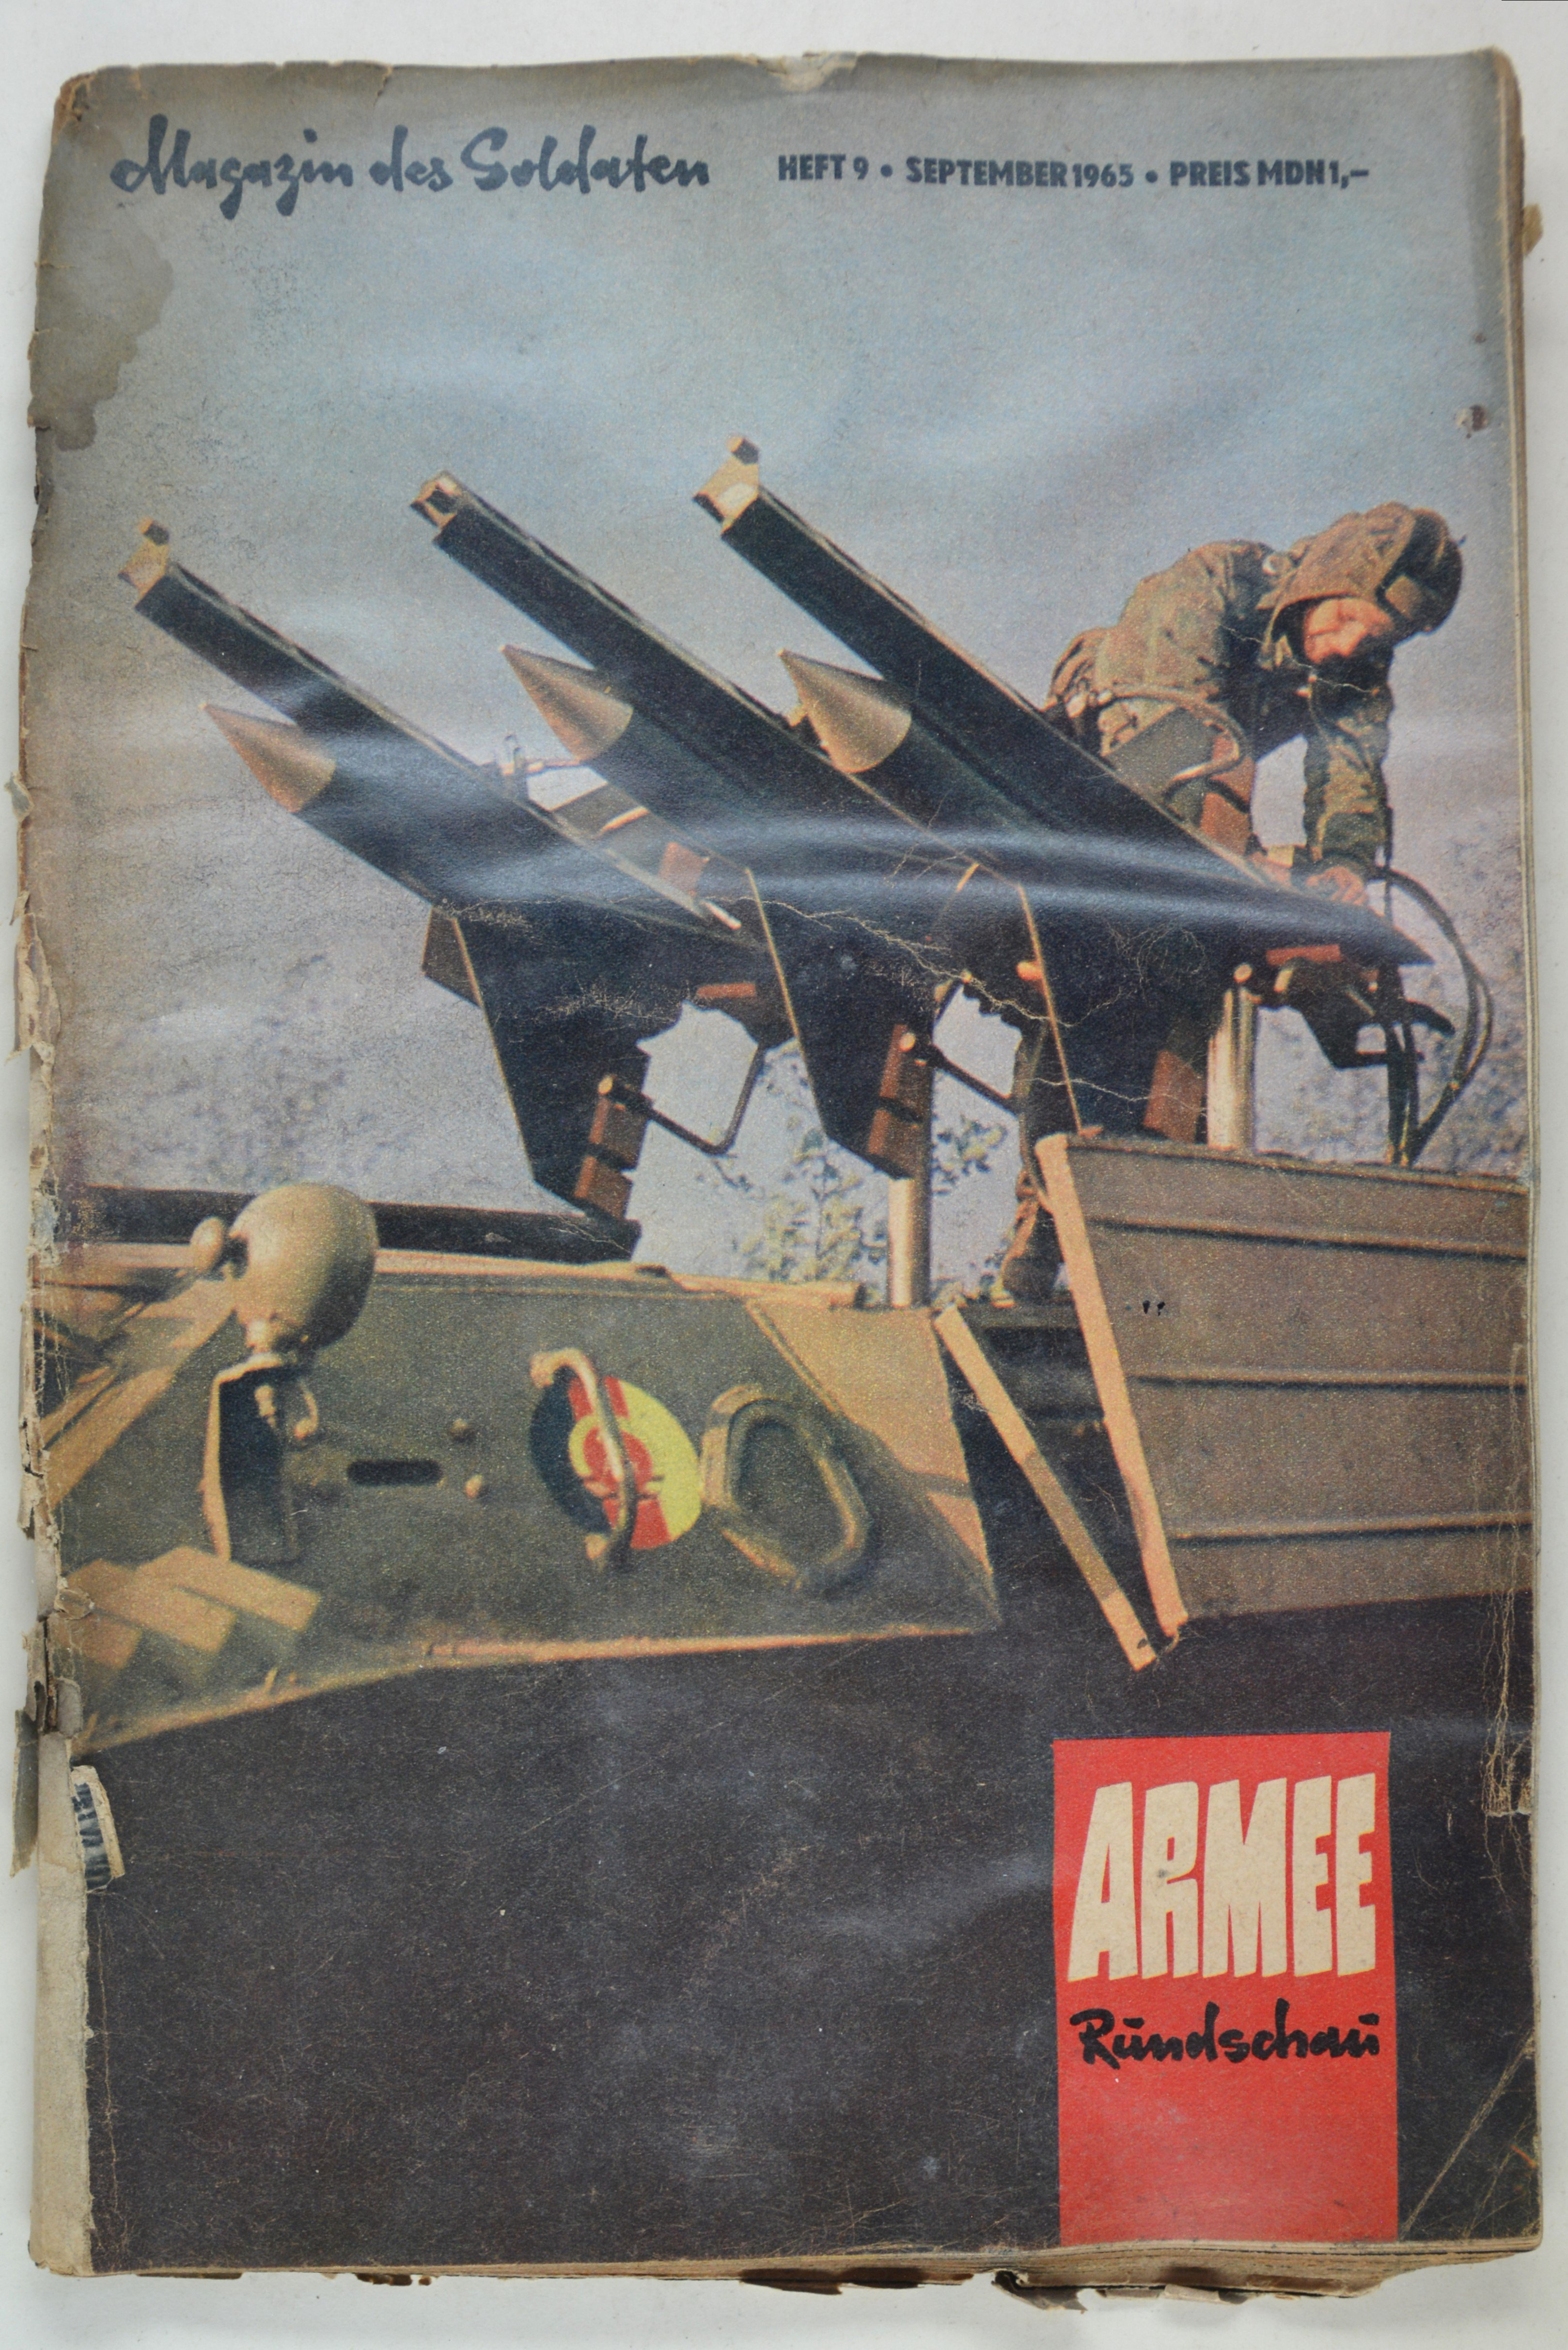 Armeerundschau - Magazin des Soldaten (1965), Heft 9 (DDR Geschichtsmuseum im Dokumentationszentrum Perleberg CC BY-SA)